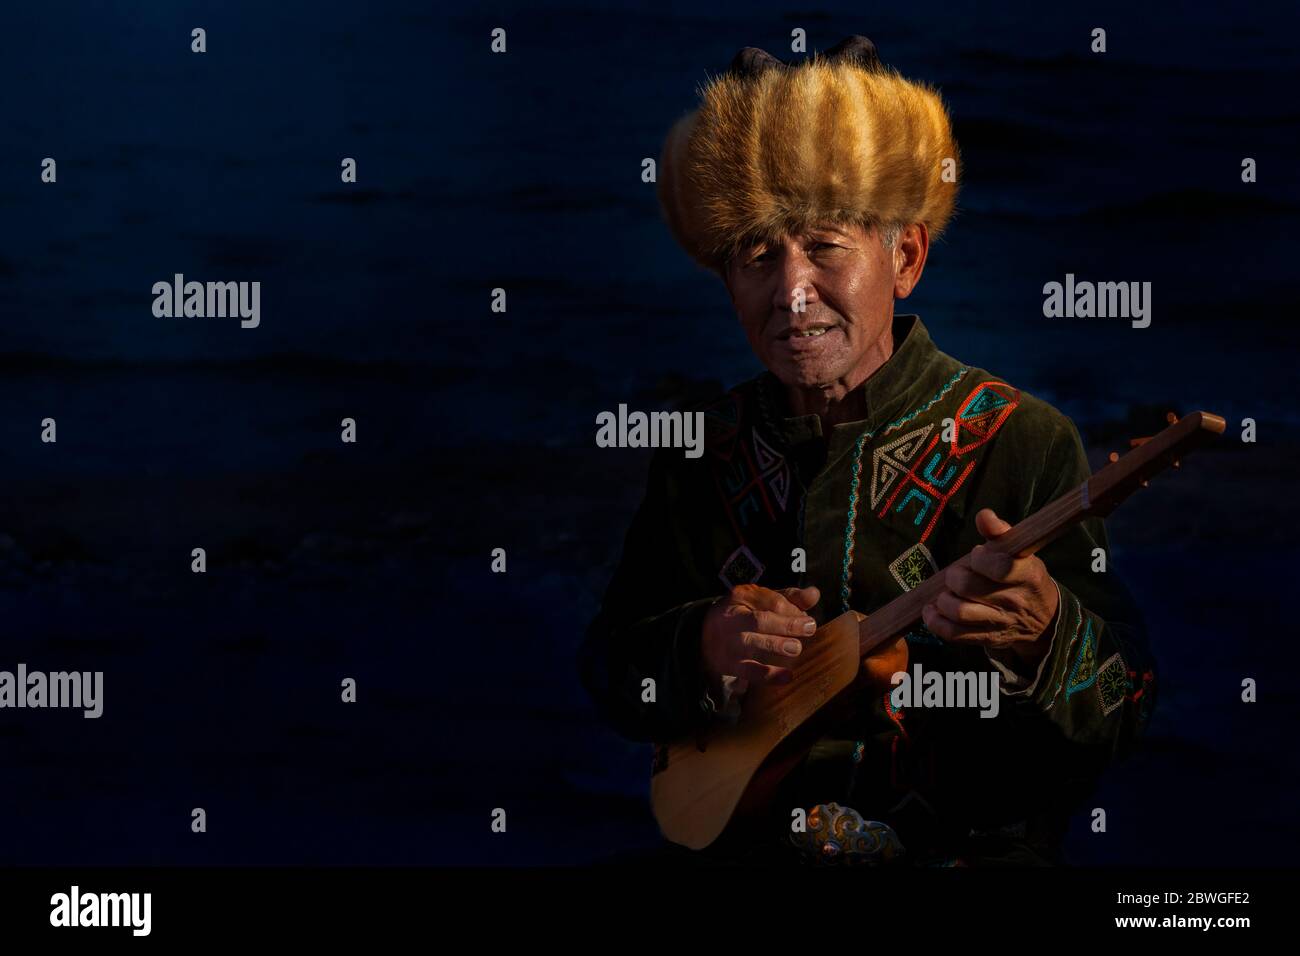 Homme local jouant un instrument de musique kirghize traditionnel connu sous le nom de Komuz, dans le lac Issyk Kul, Kirghizistan Banque D'Images